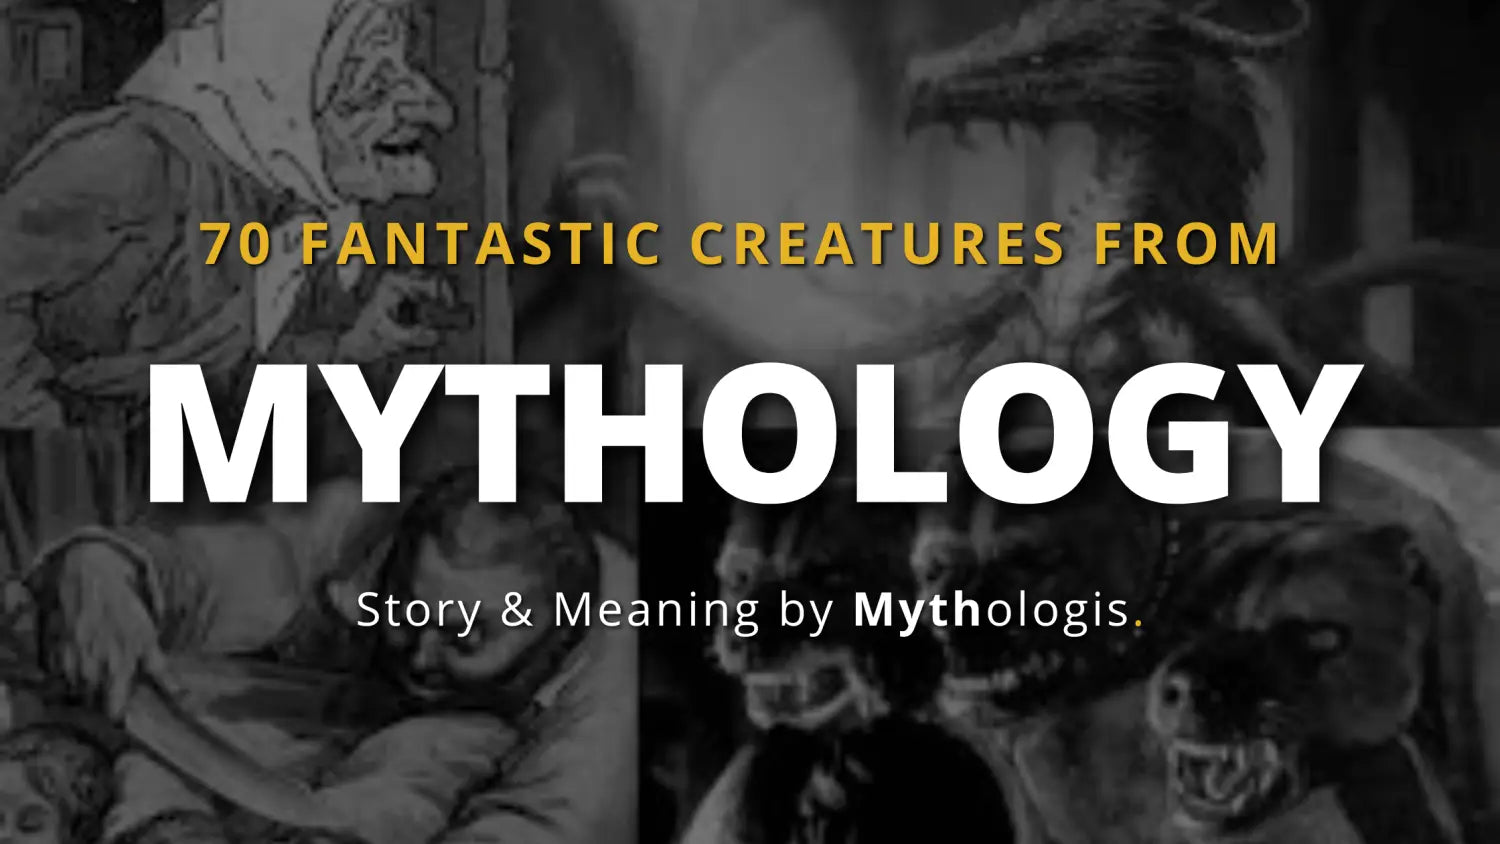 mythological-creatures